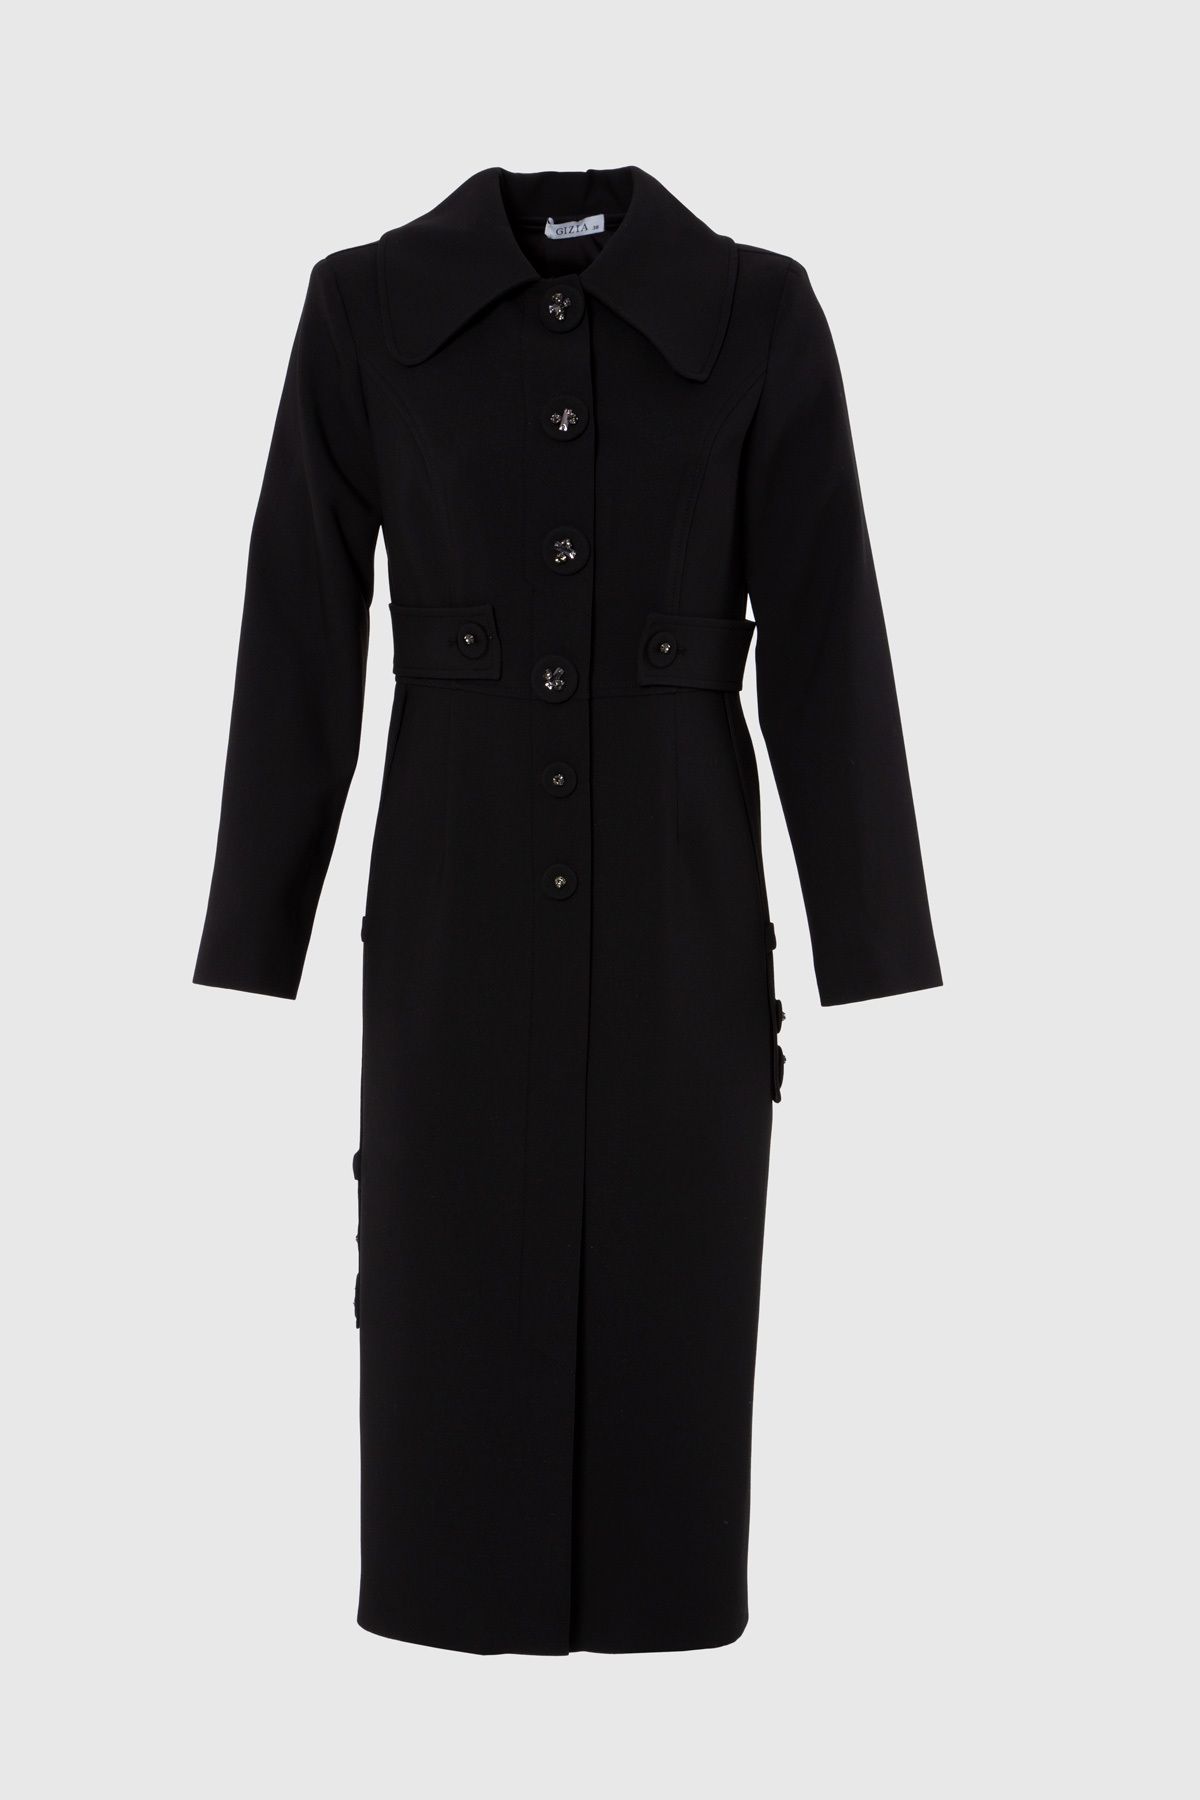 GIZIA Bant Detaylı Işleme Düğmeli Diz Altı Kalem Siyah Elbise